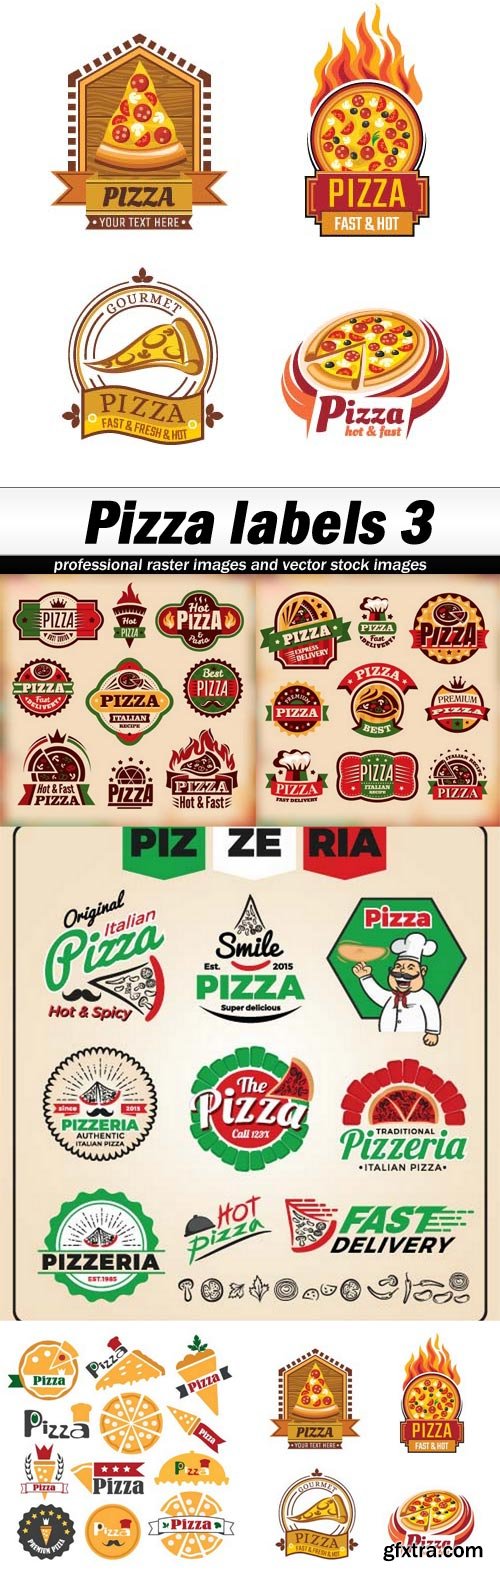 Pizza labels 3